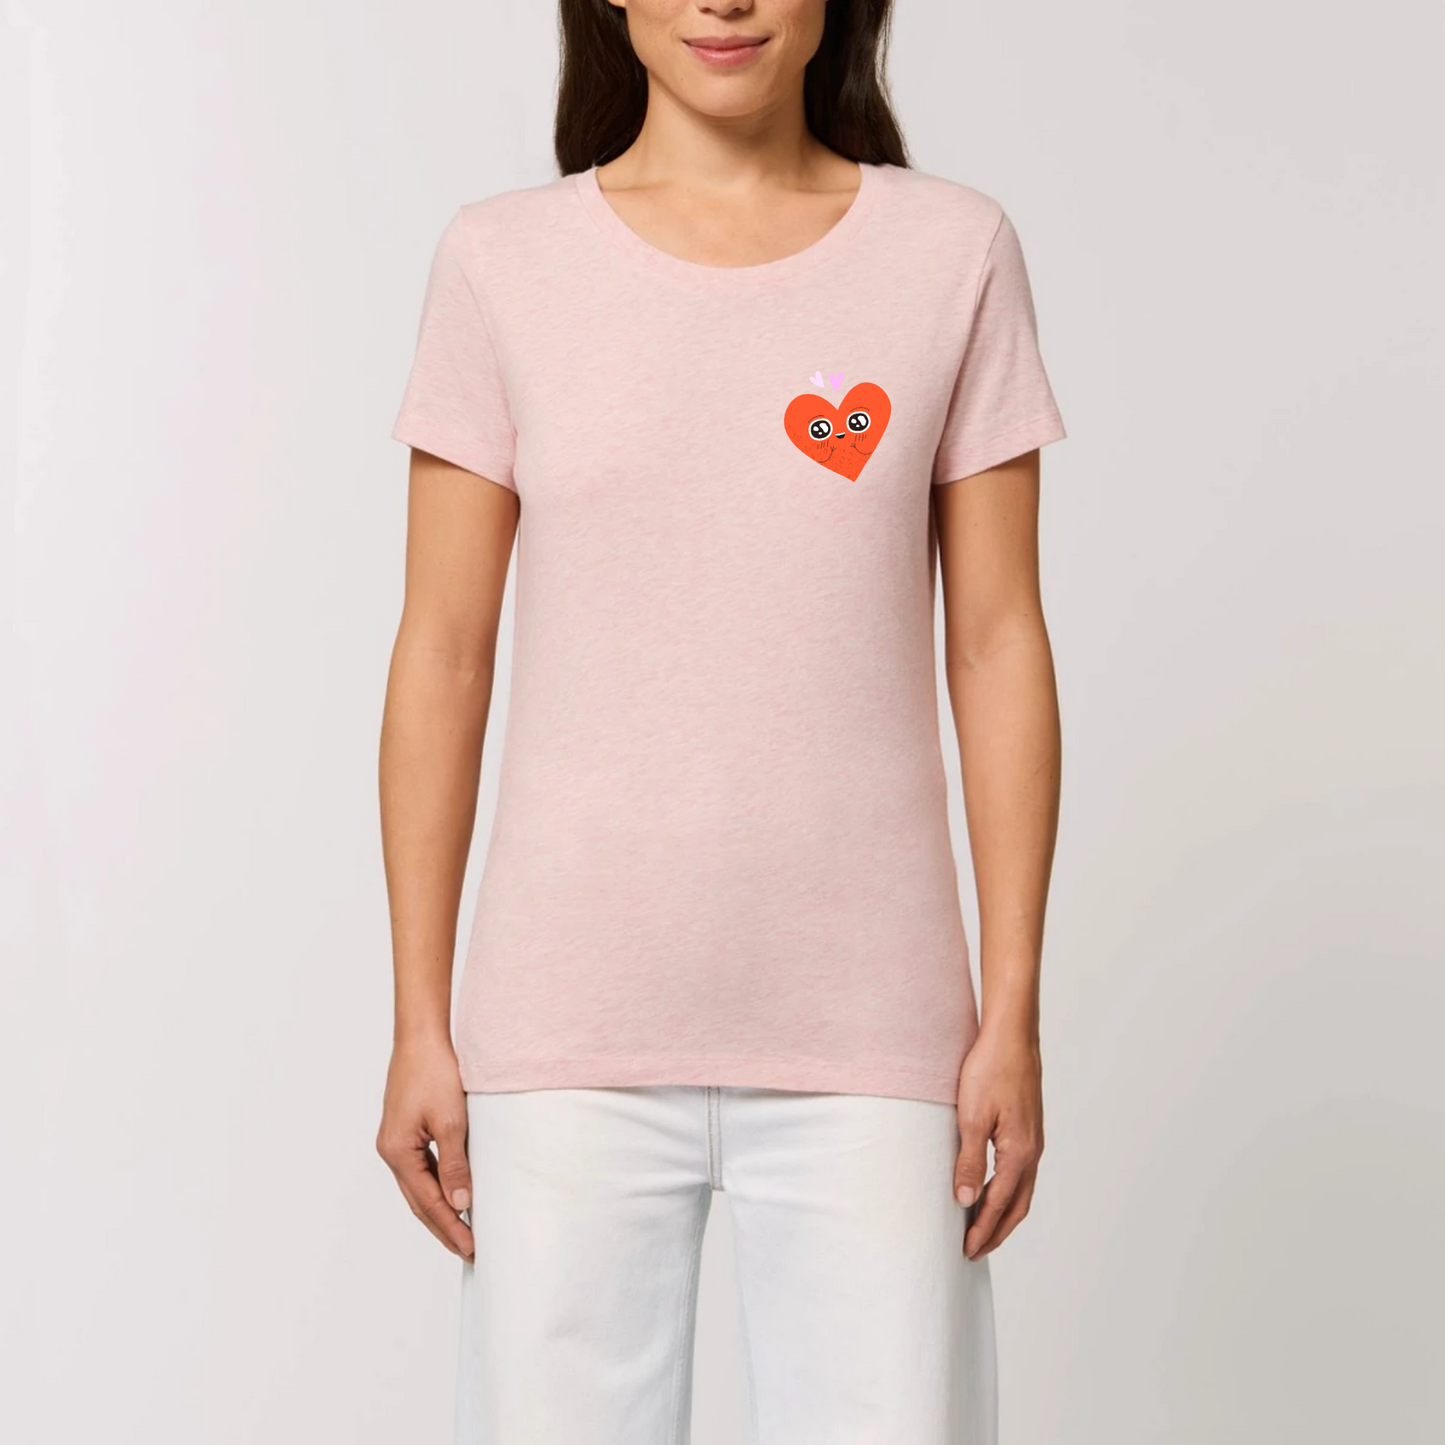 t-shirt femme Amoureux T-French coton bio, tee shirt femme, manches courtes , cœur, saint valentin, Rose